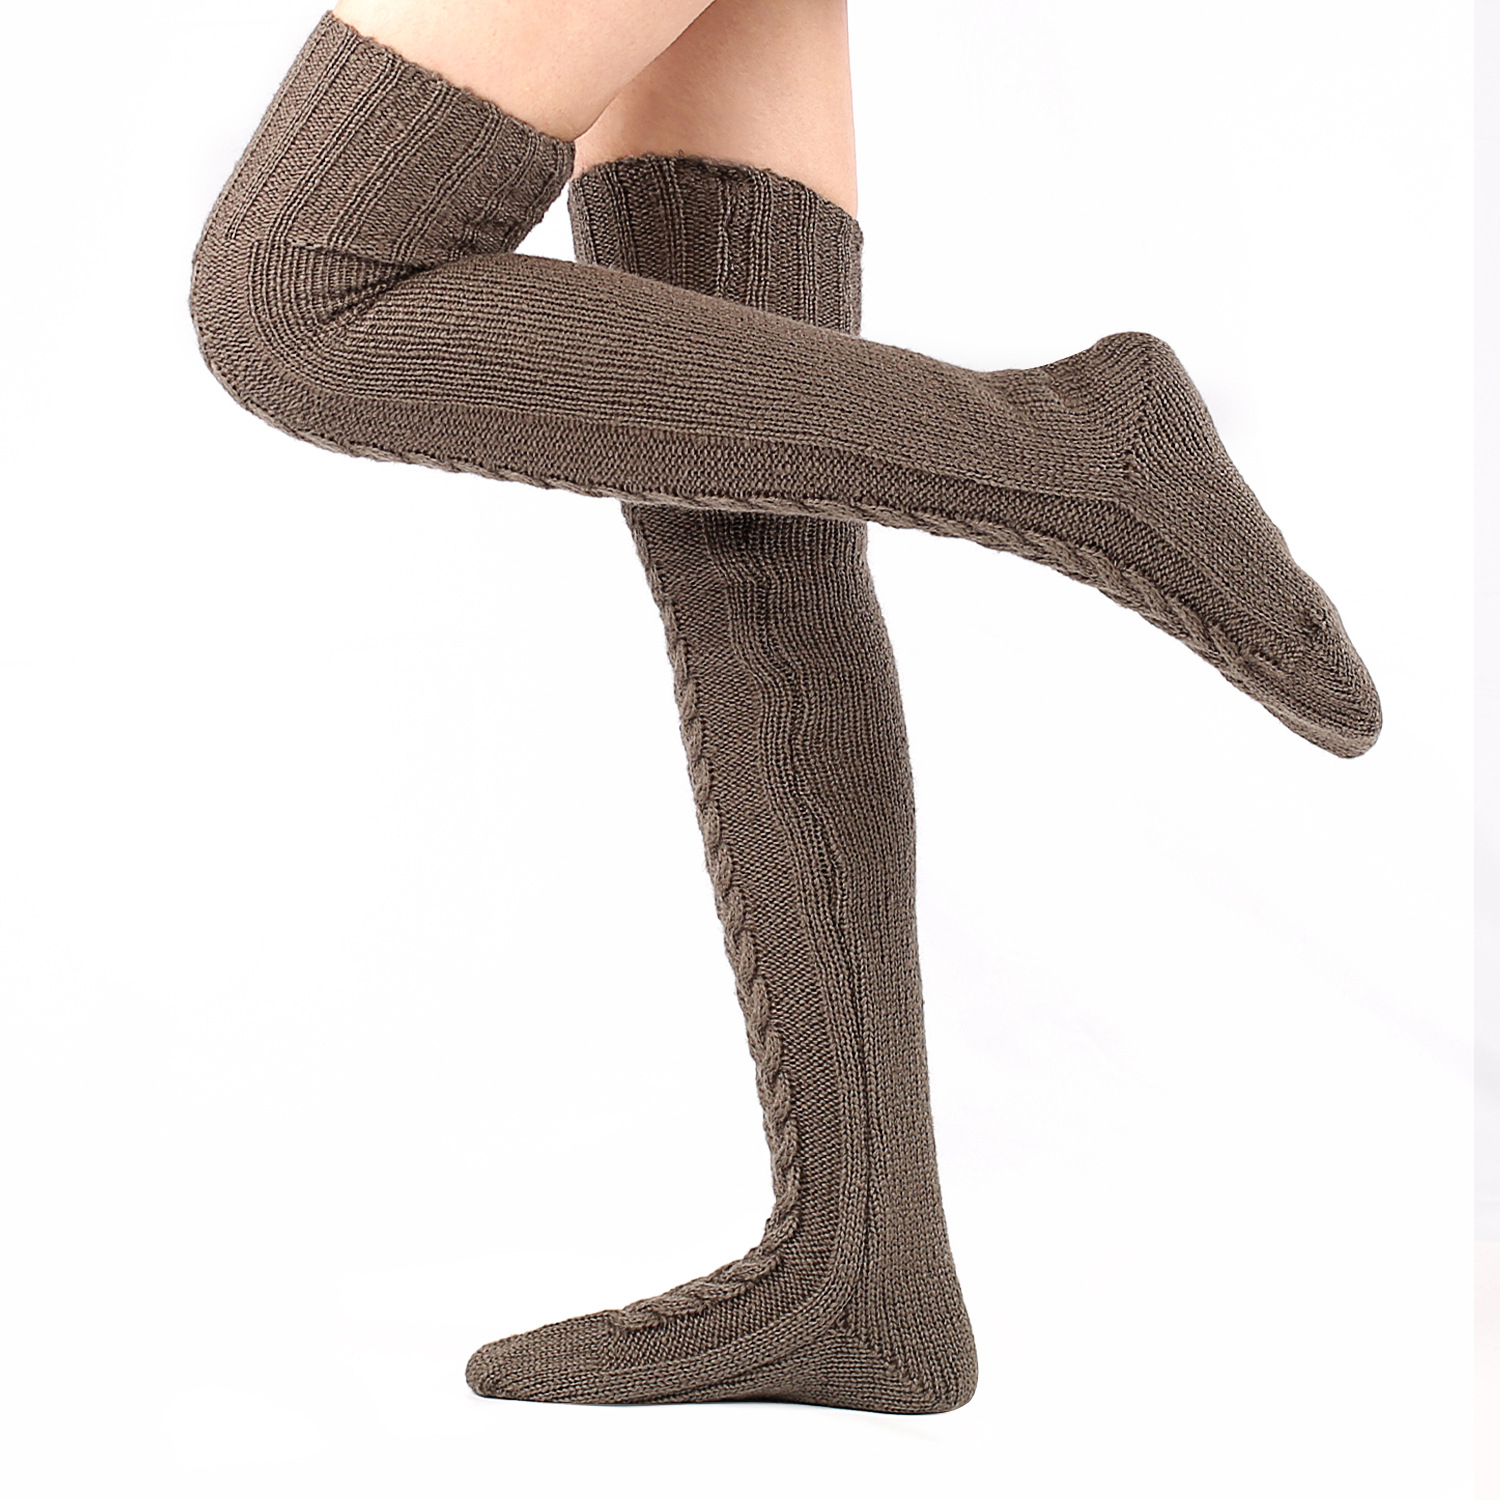 Autumn and winter knitted knee stockings women's extended floor socks woolen pile socks